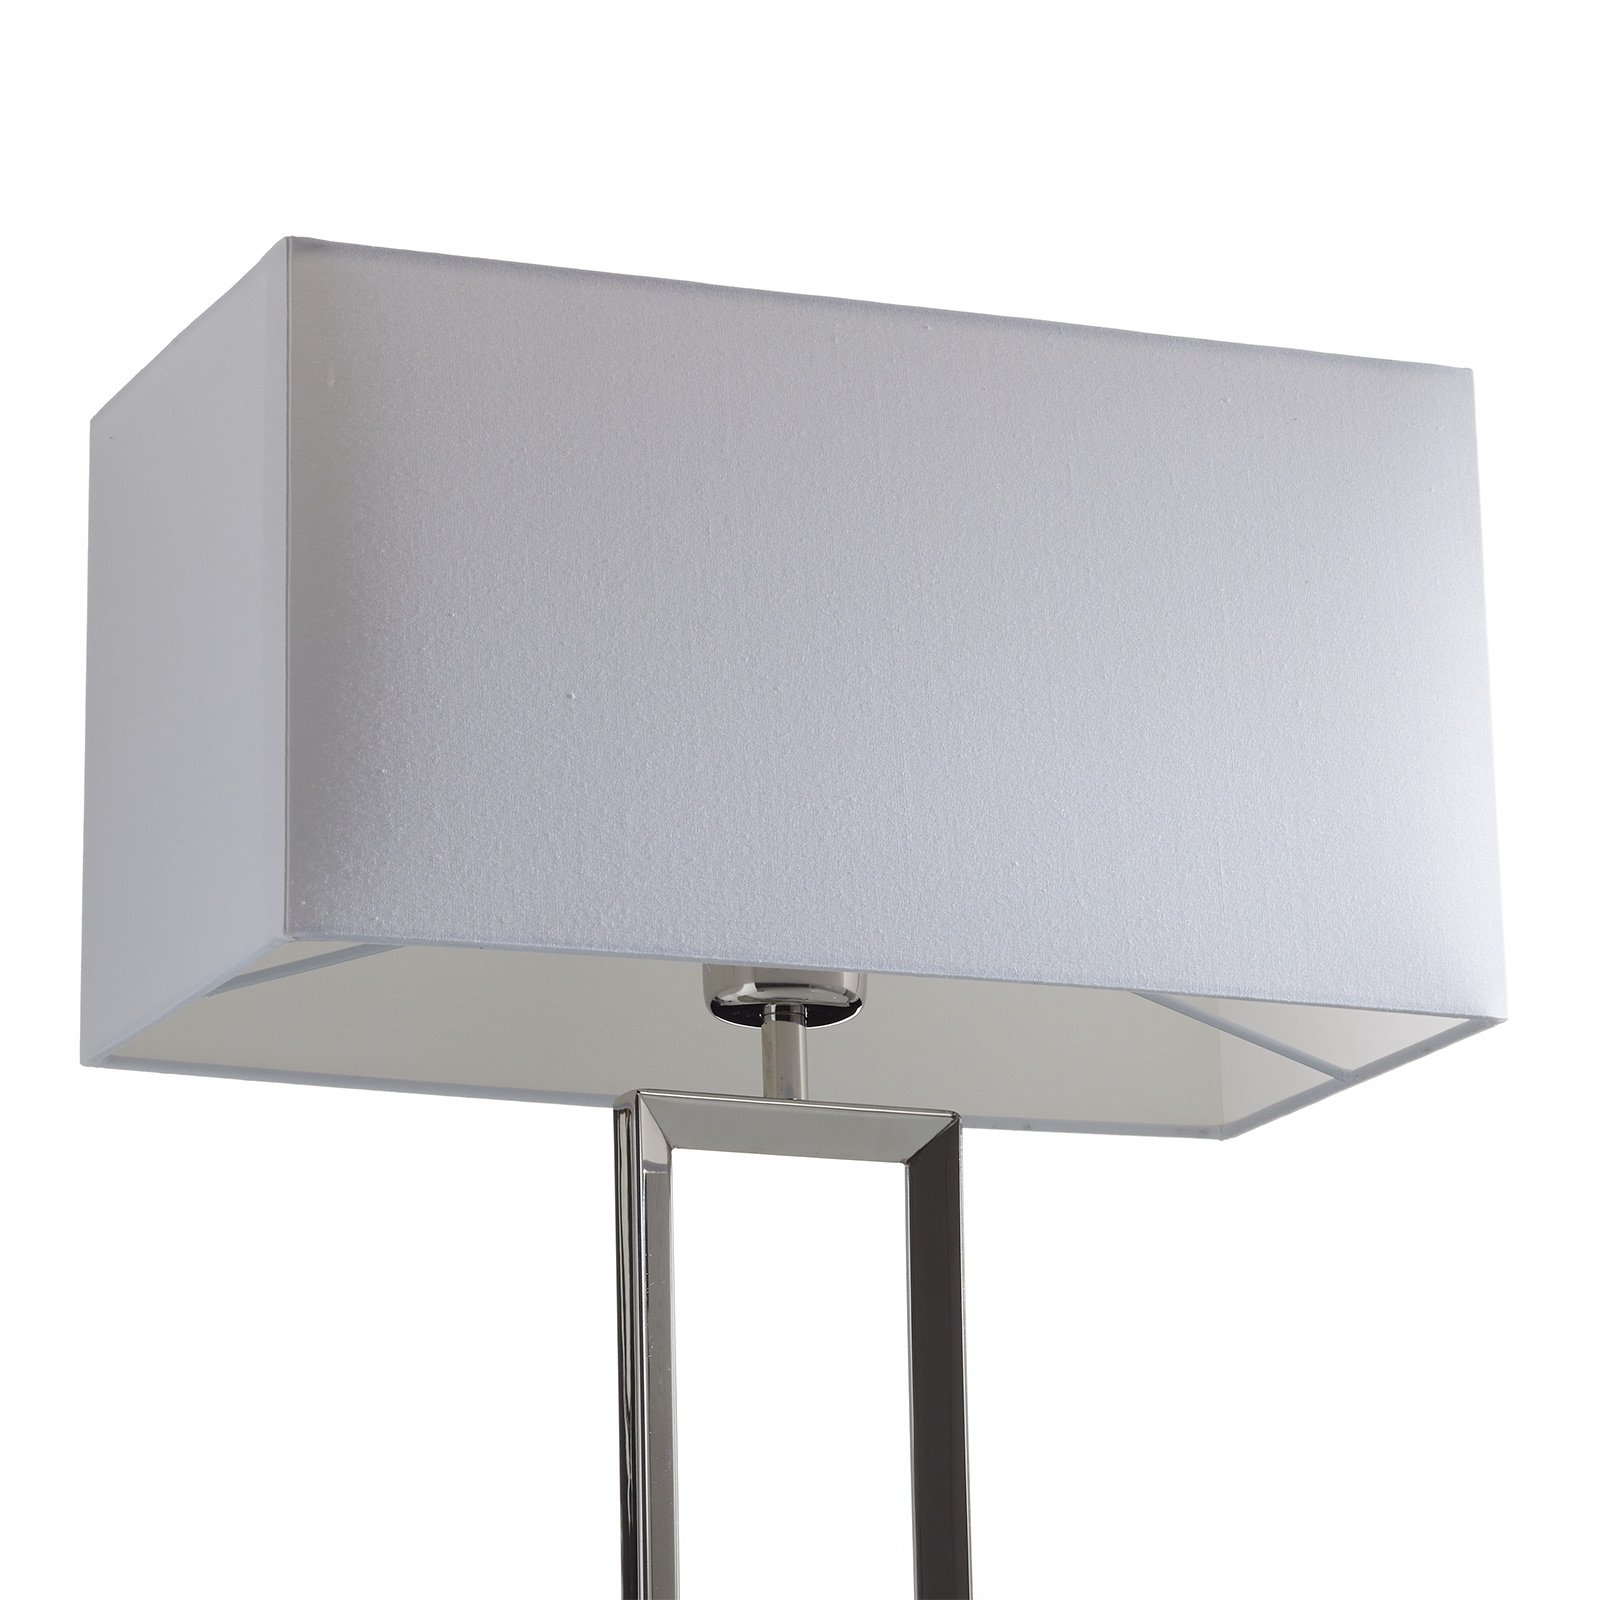 Helestra Enna 2 textilní stolní lampa, výška 53 cm